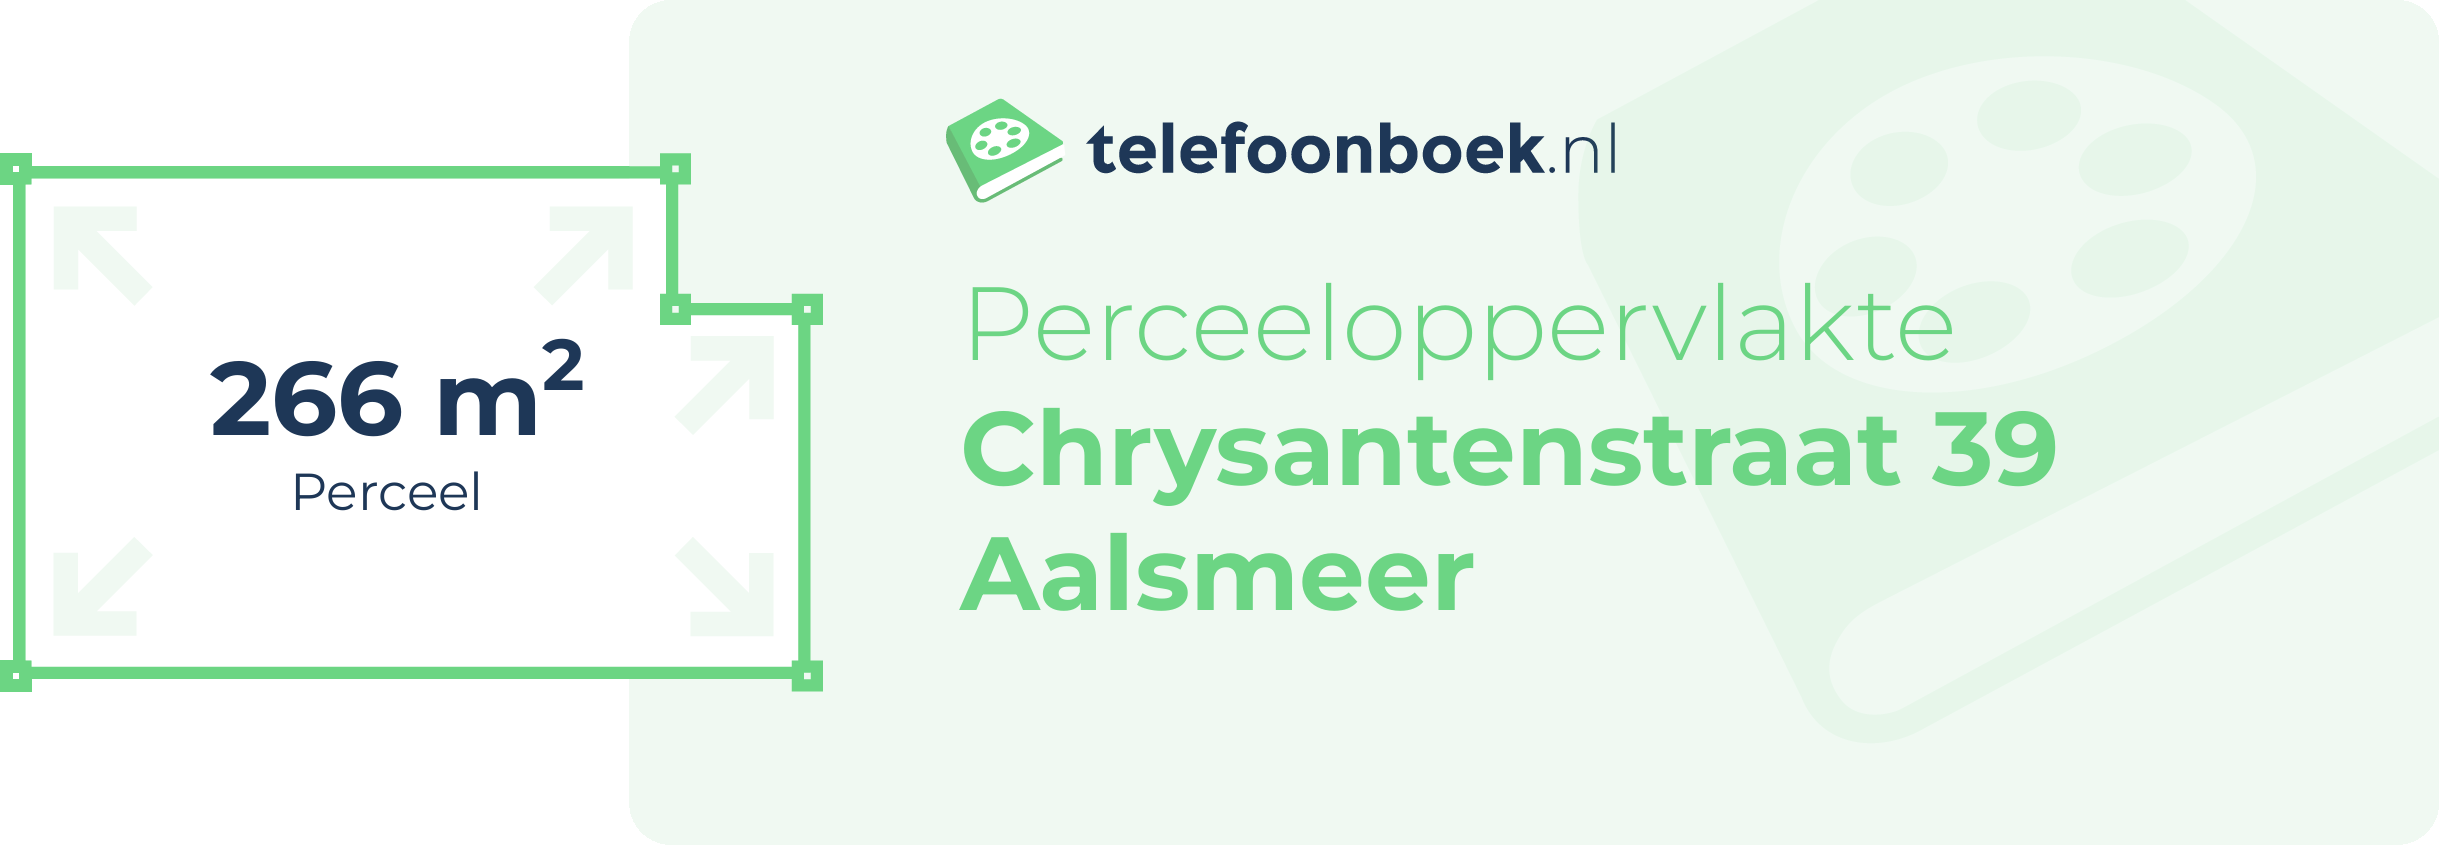 Perceeloppervlakte Chrysantenstraat 39 Aalsmeer